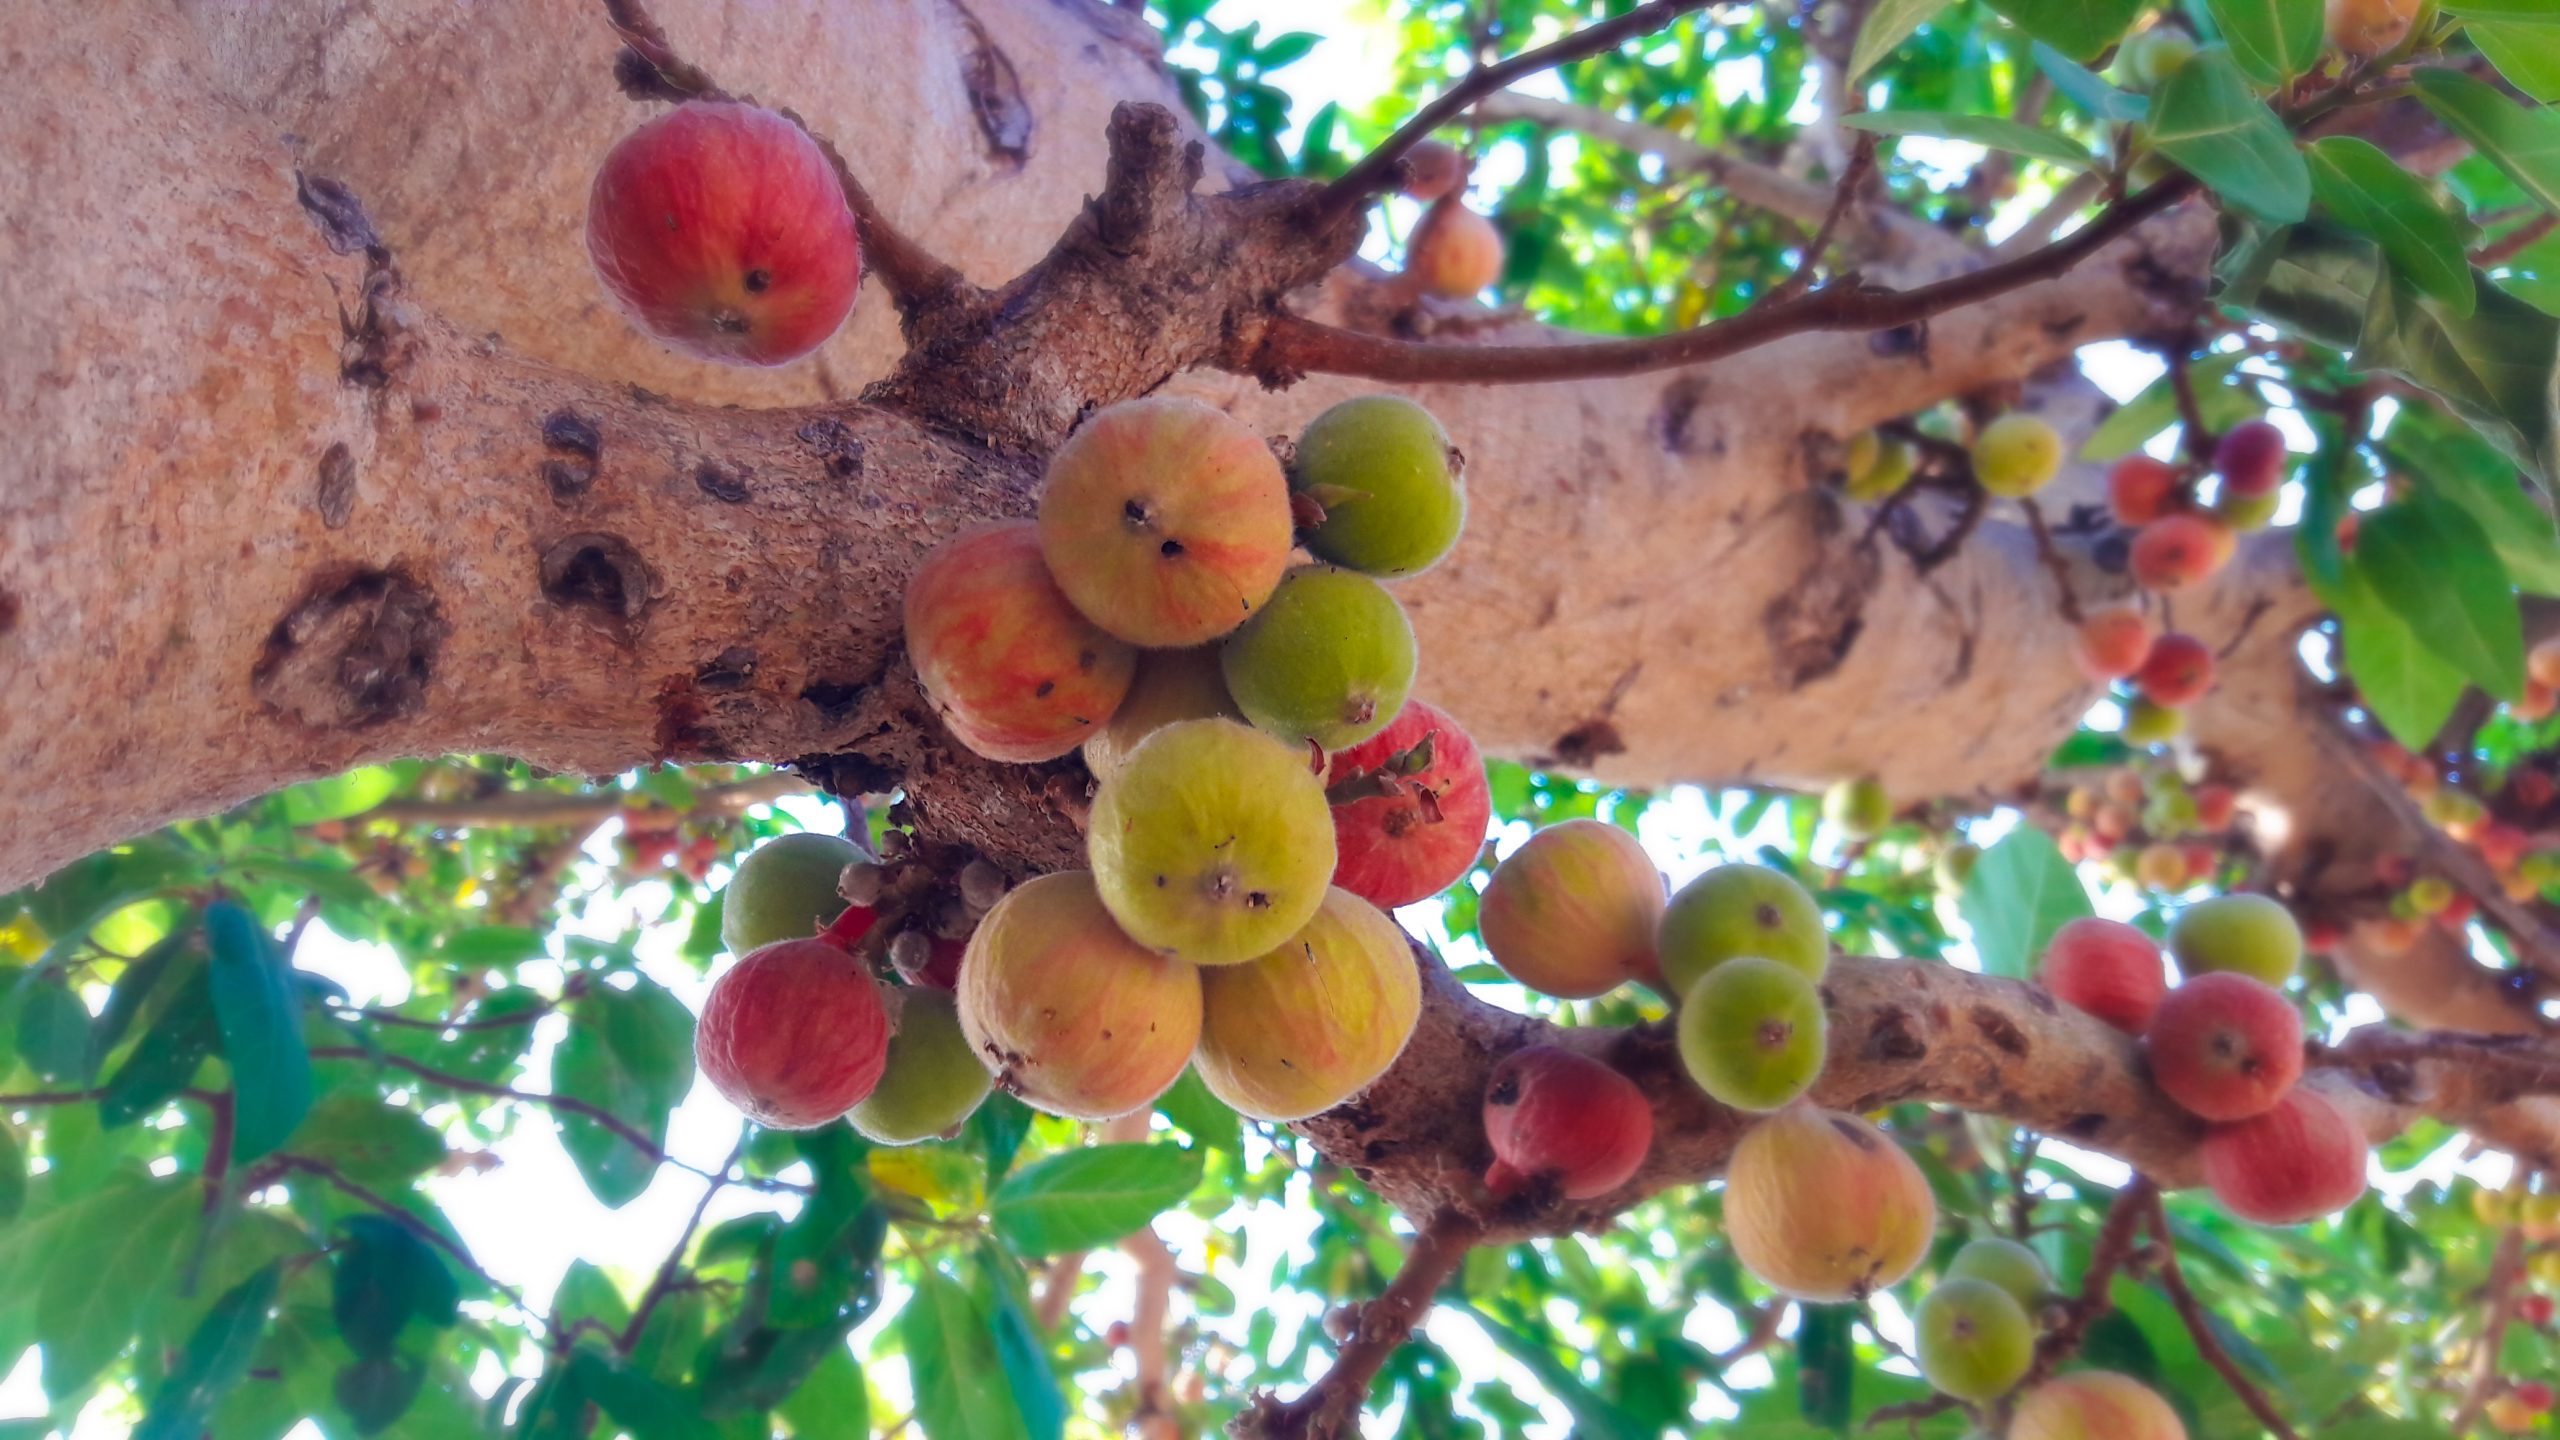 A fruit tree